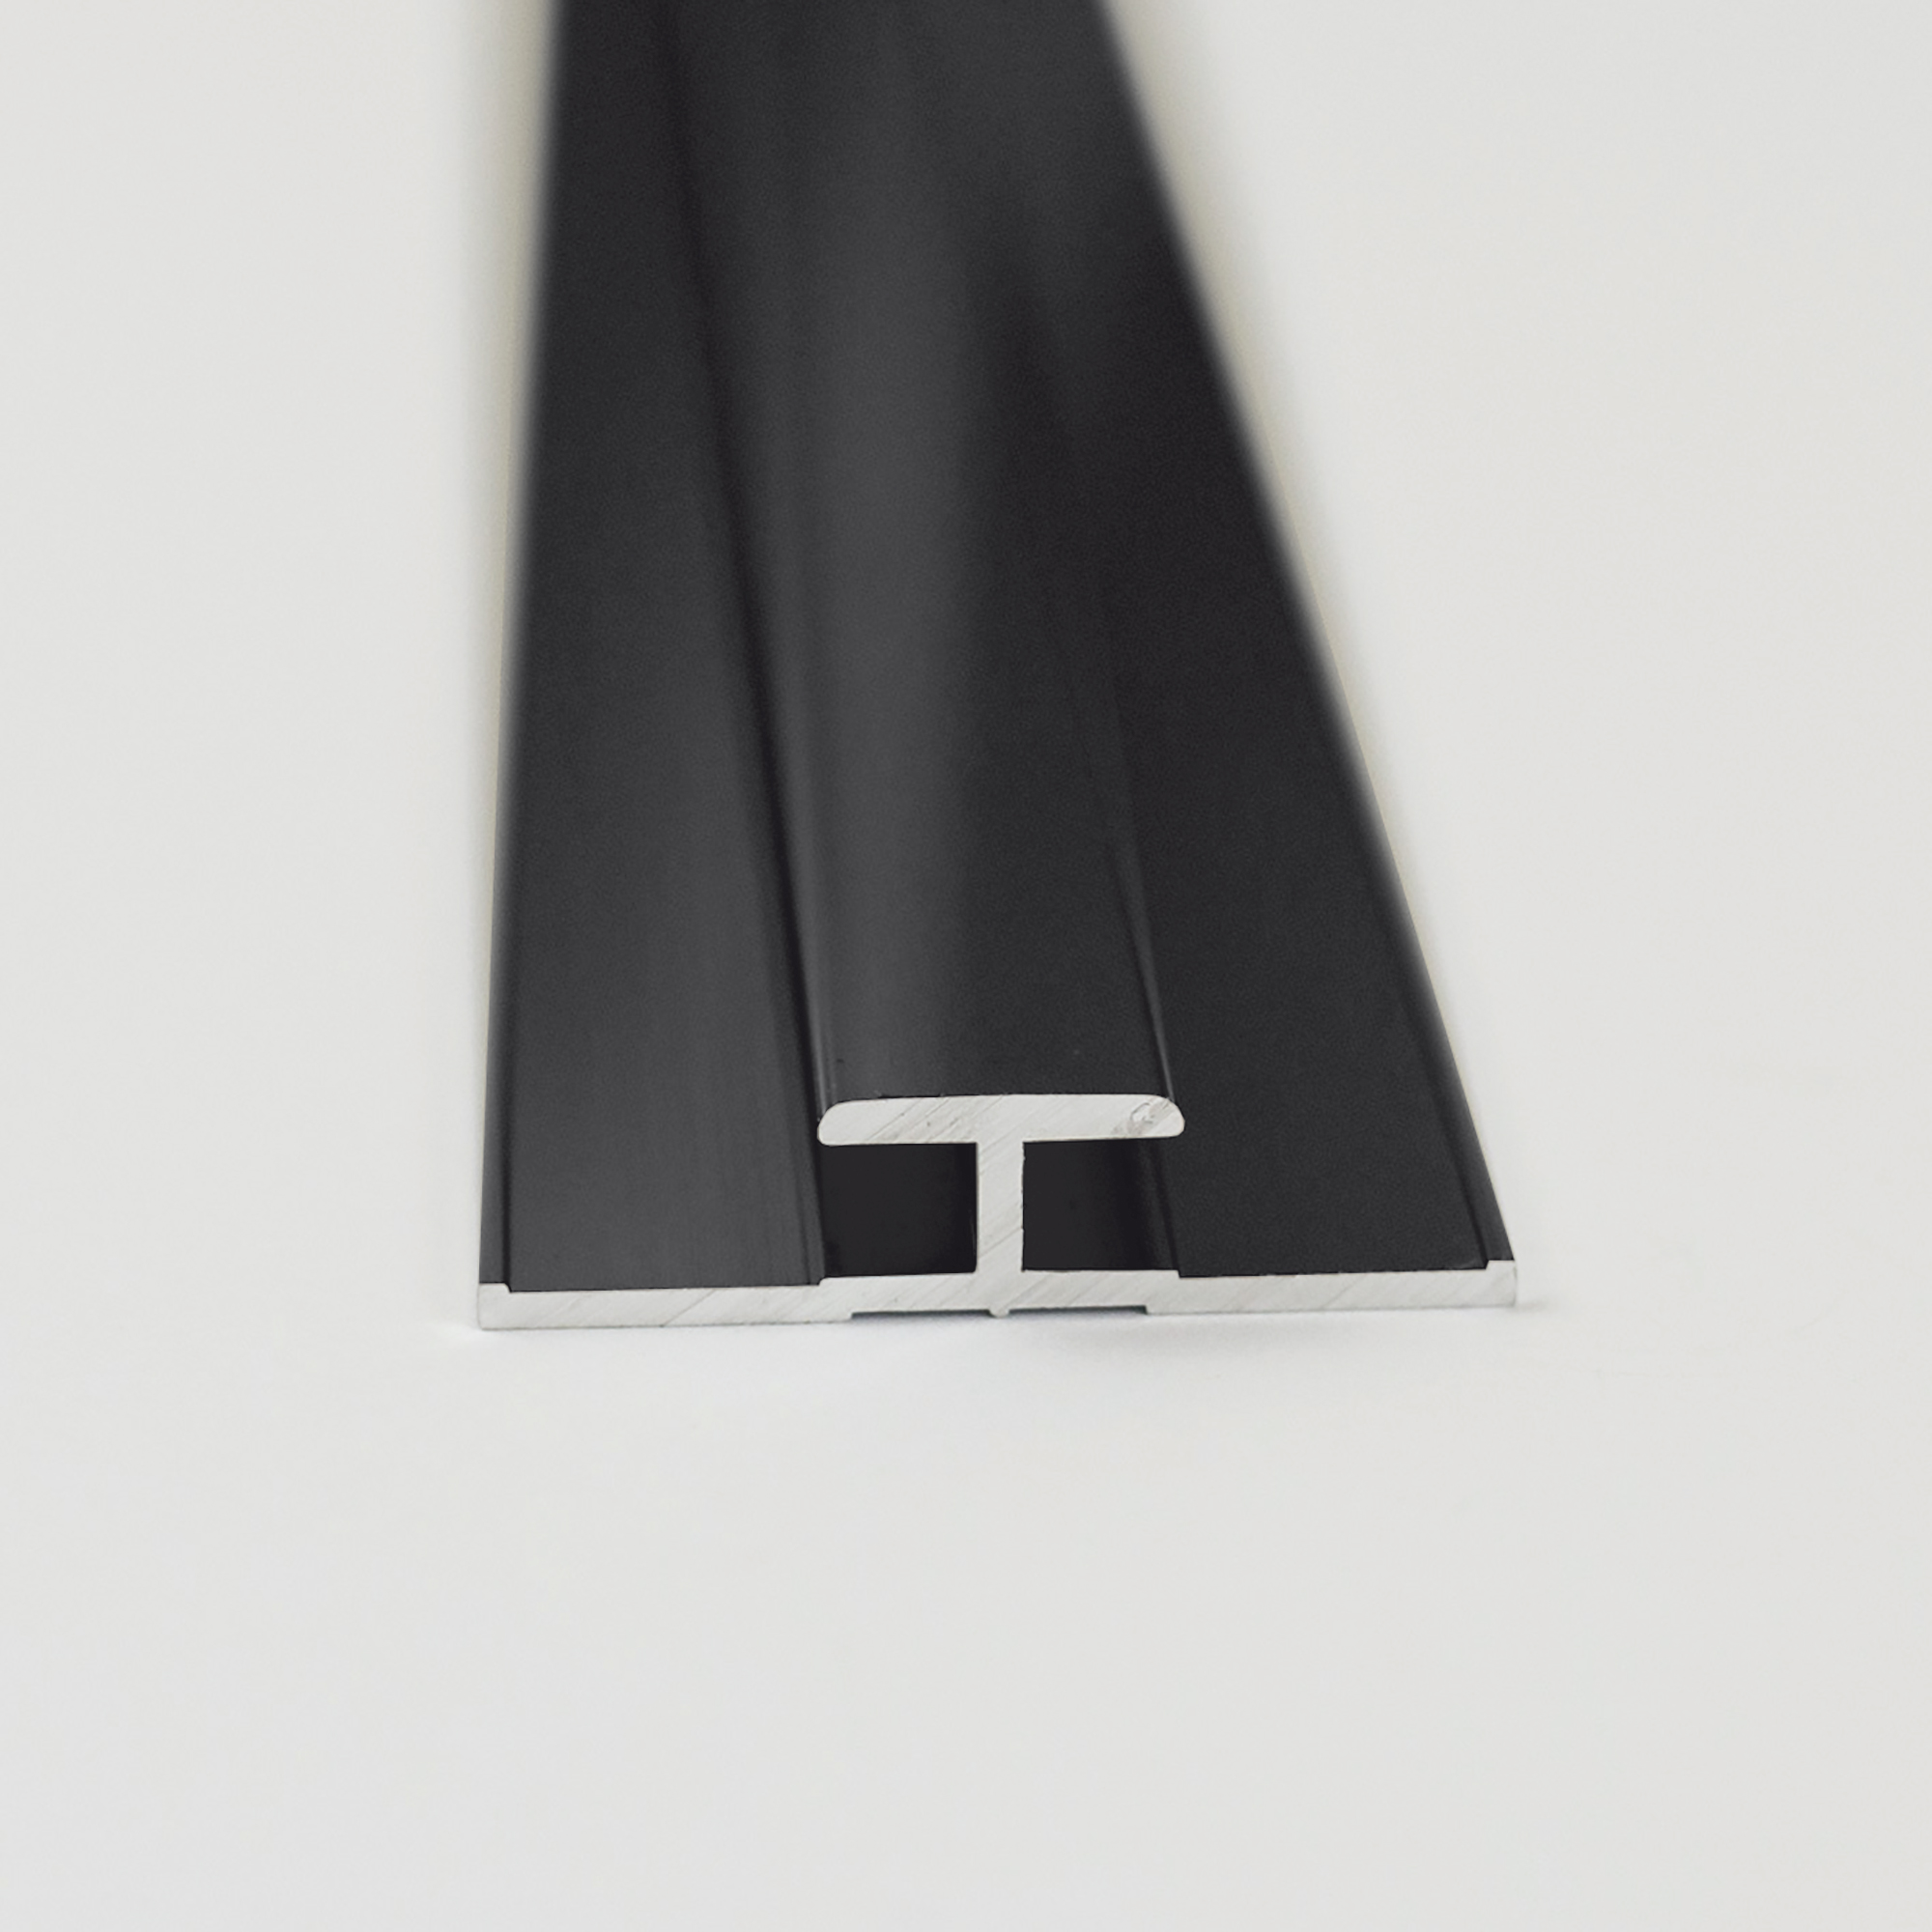 Verbindungsprofil für Rückwandplatten, schwarz matt, 2550 mm + product picture